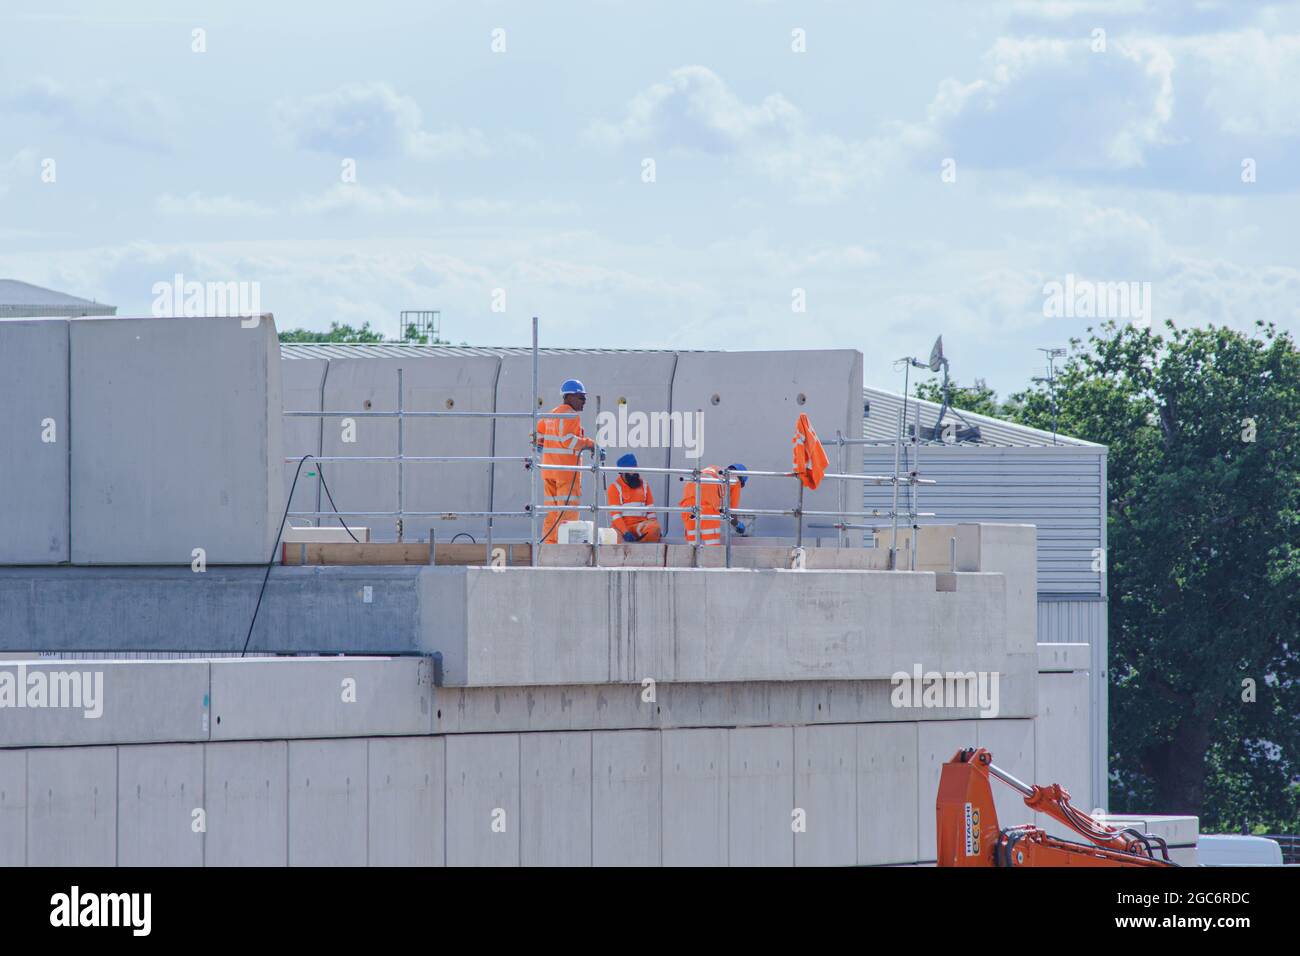 Arbeiter in orangefarbenen Neon-Sicherheitsanzügen arbeiten an der Konstruktion eines Überflugs. Stockfoto